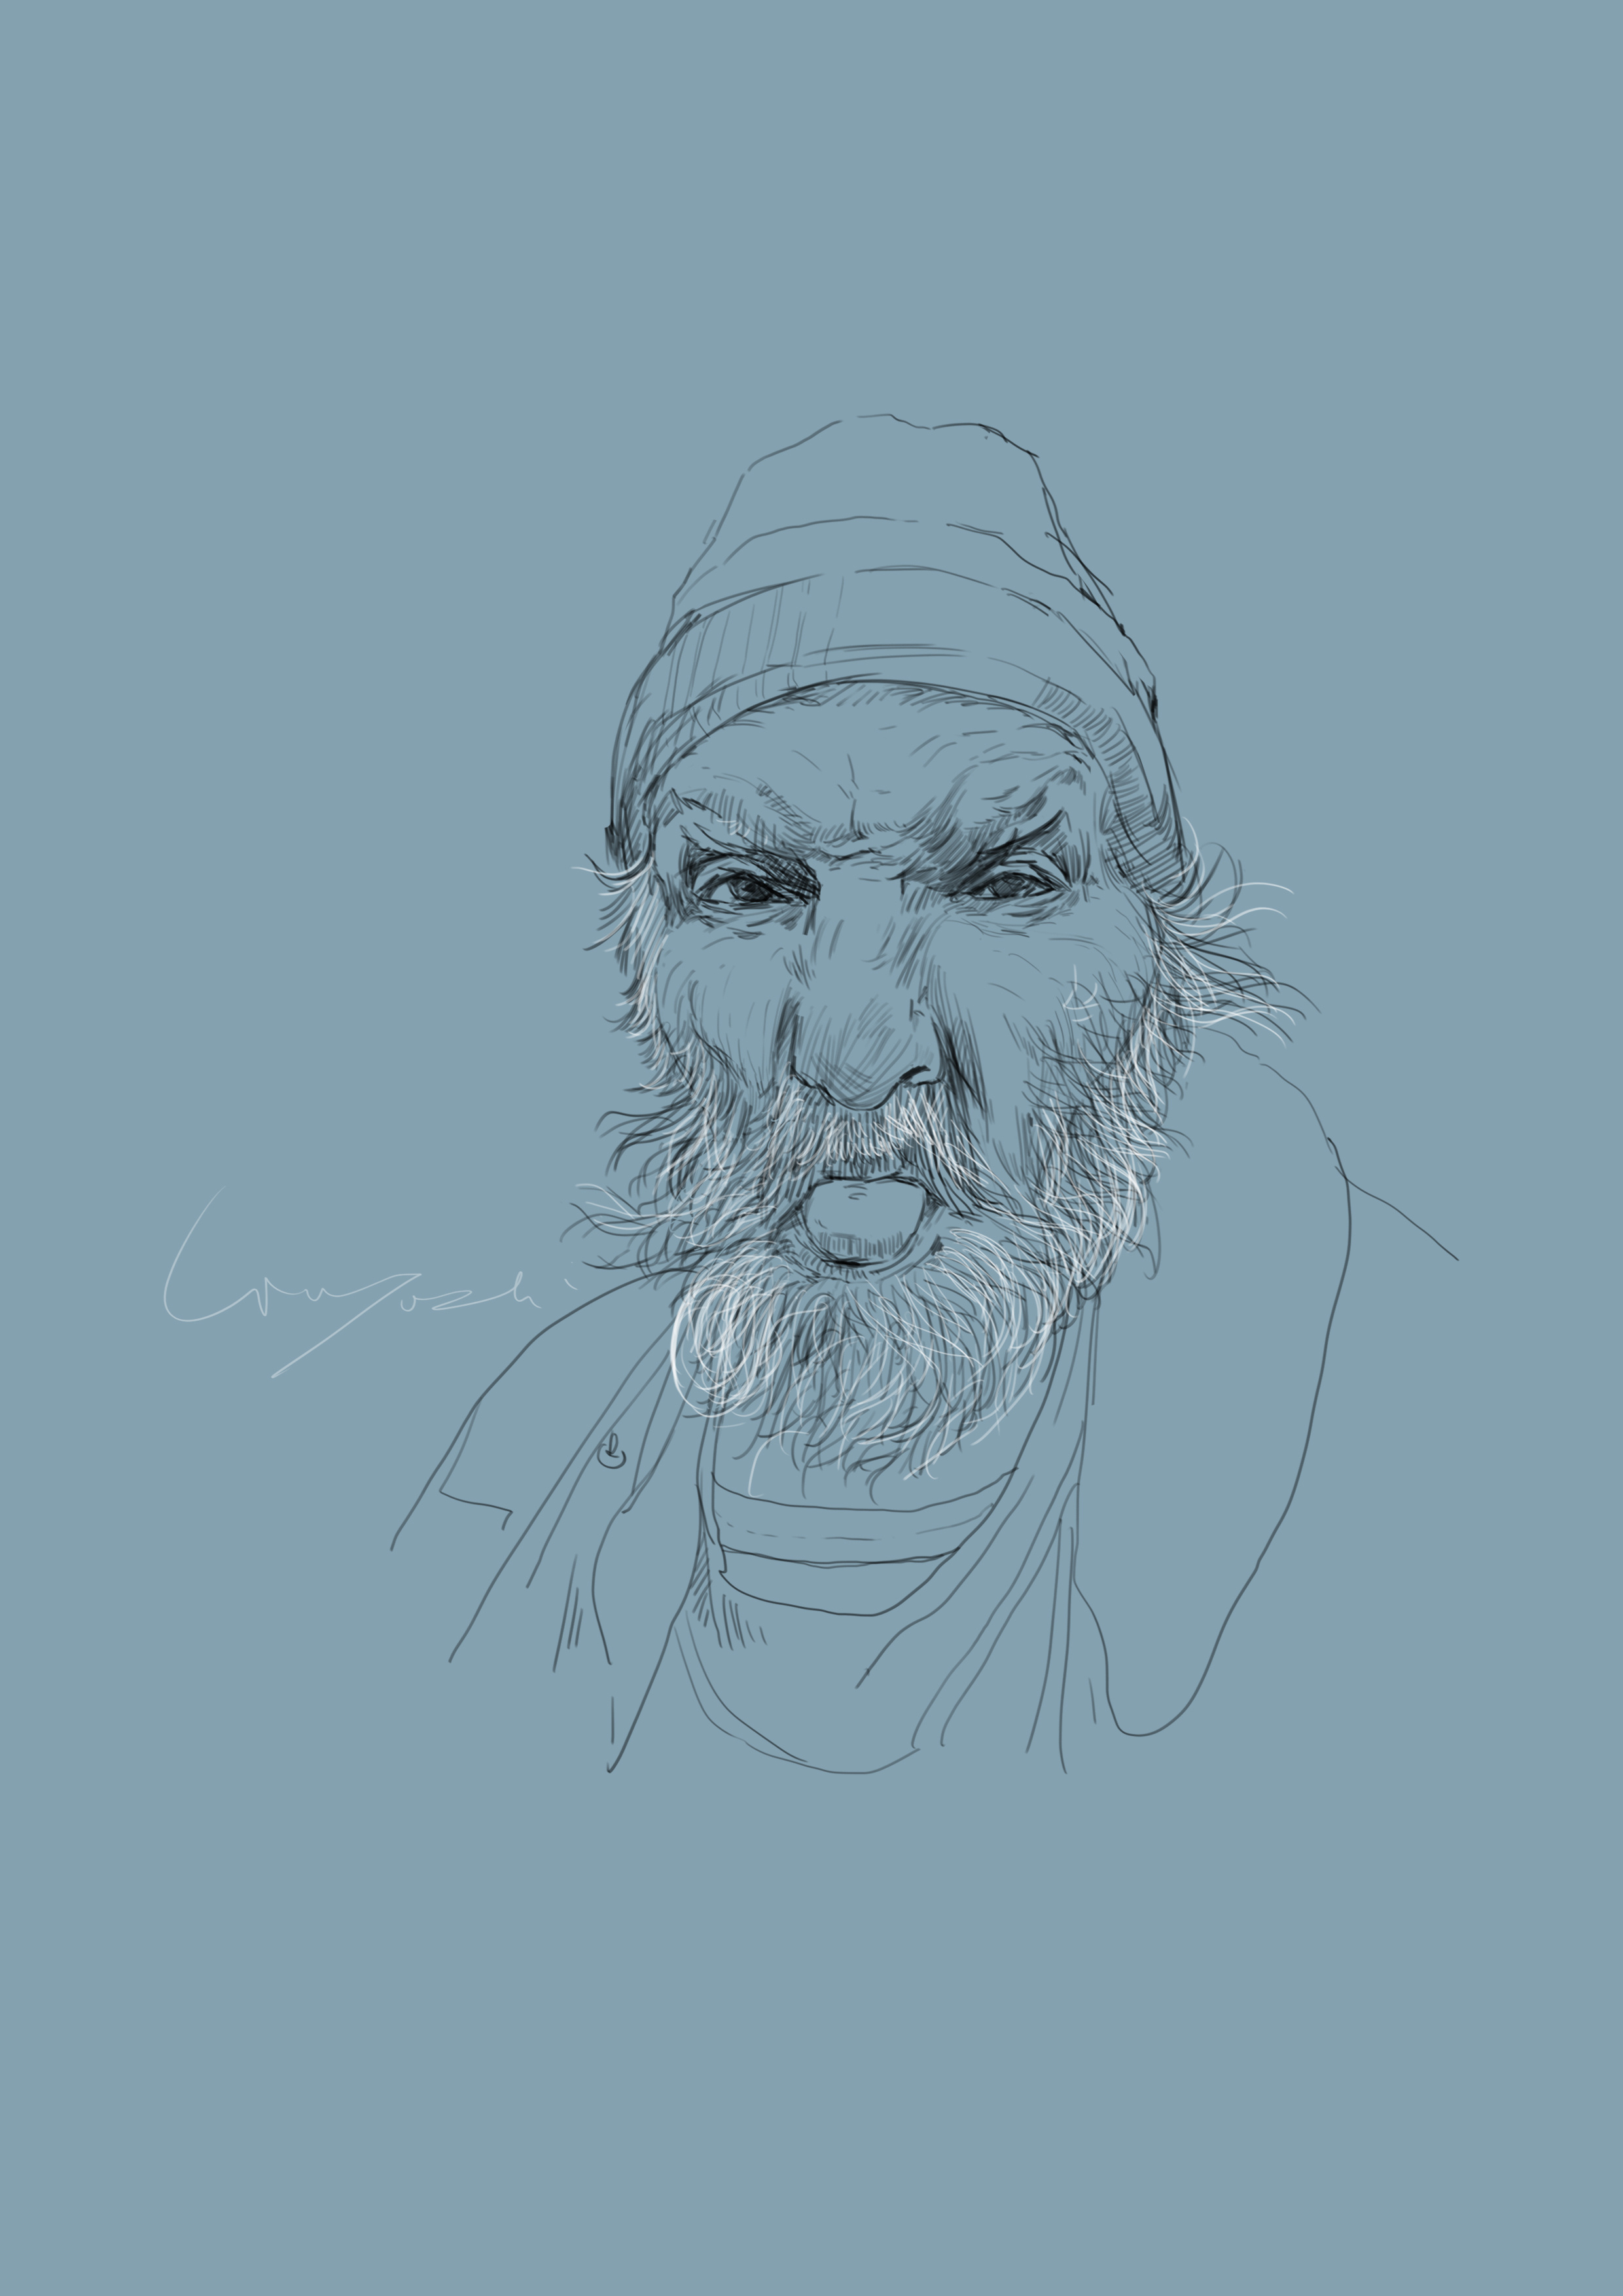 有一个长的胡子的老人充满在灰色背景的悲伤 库存图片. 图片 包括有 行家, 纵向, 工作室, 成人, 男人 - 149604043